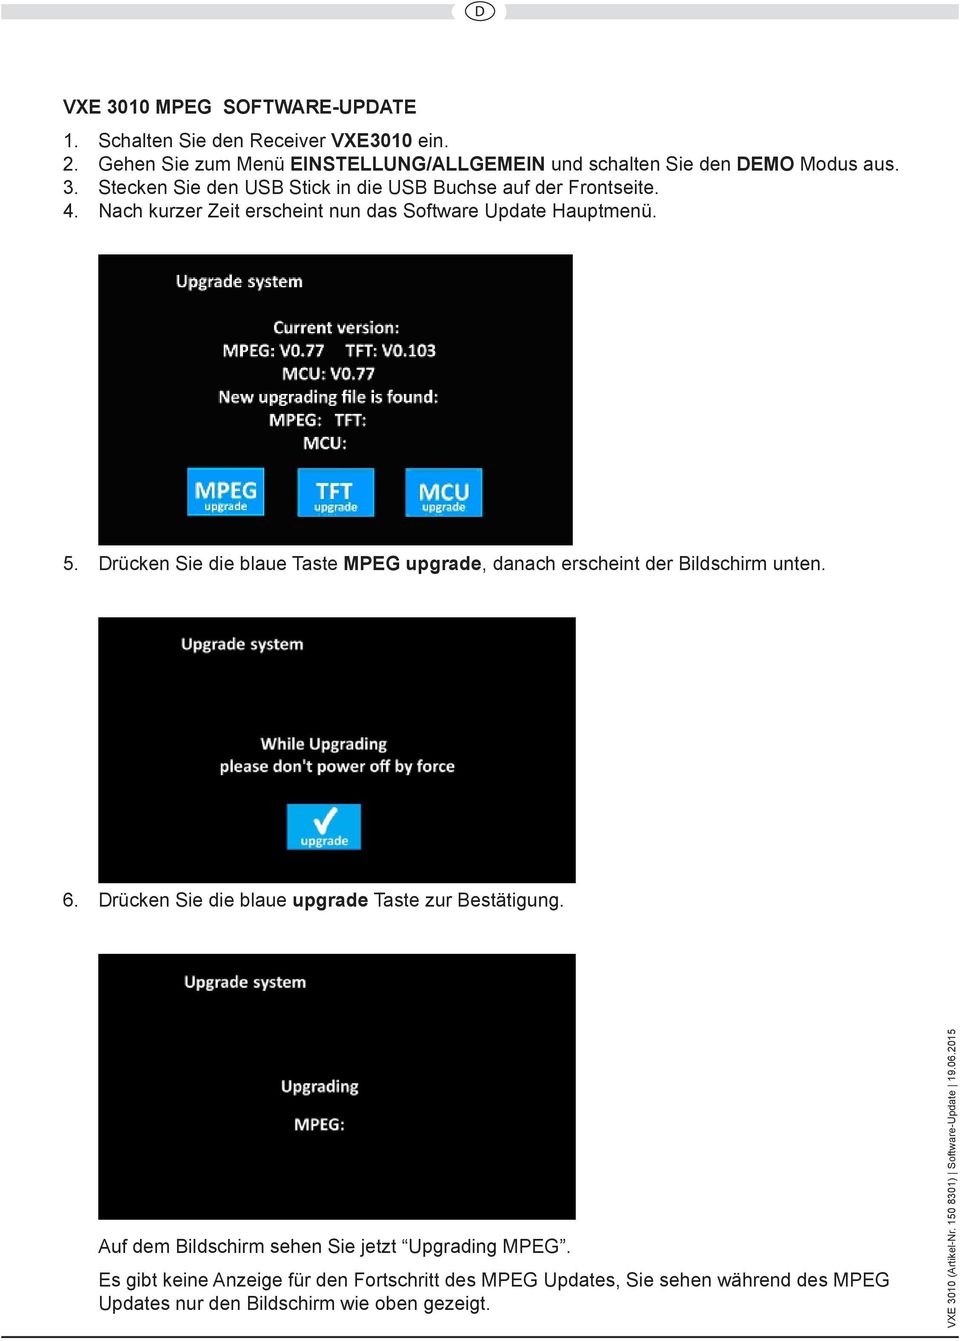 Drücken Sie die blaue Taste MPEG upgrade, danach erscheint der Bildschirm unten. 6. Drücken Sie die blaue upgrade Taste zur Bestätigung.